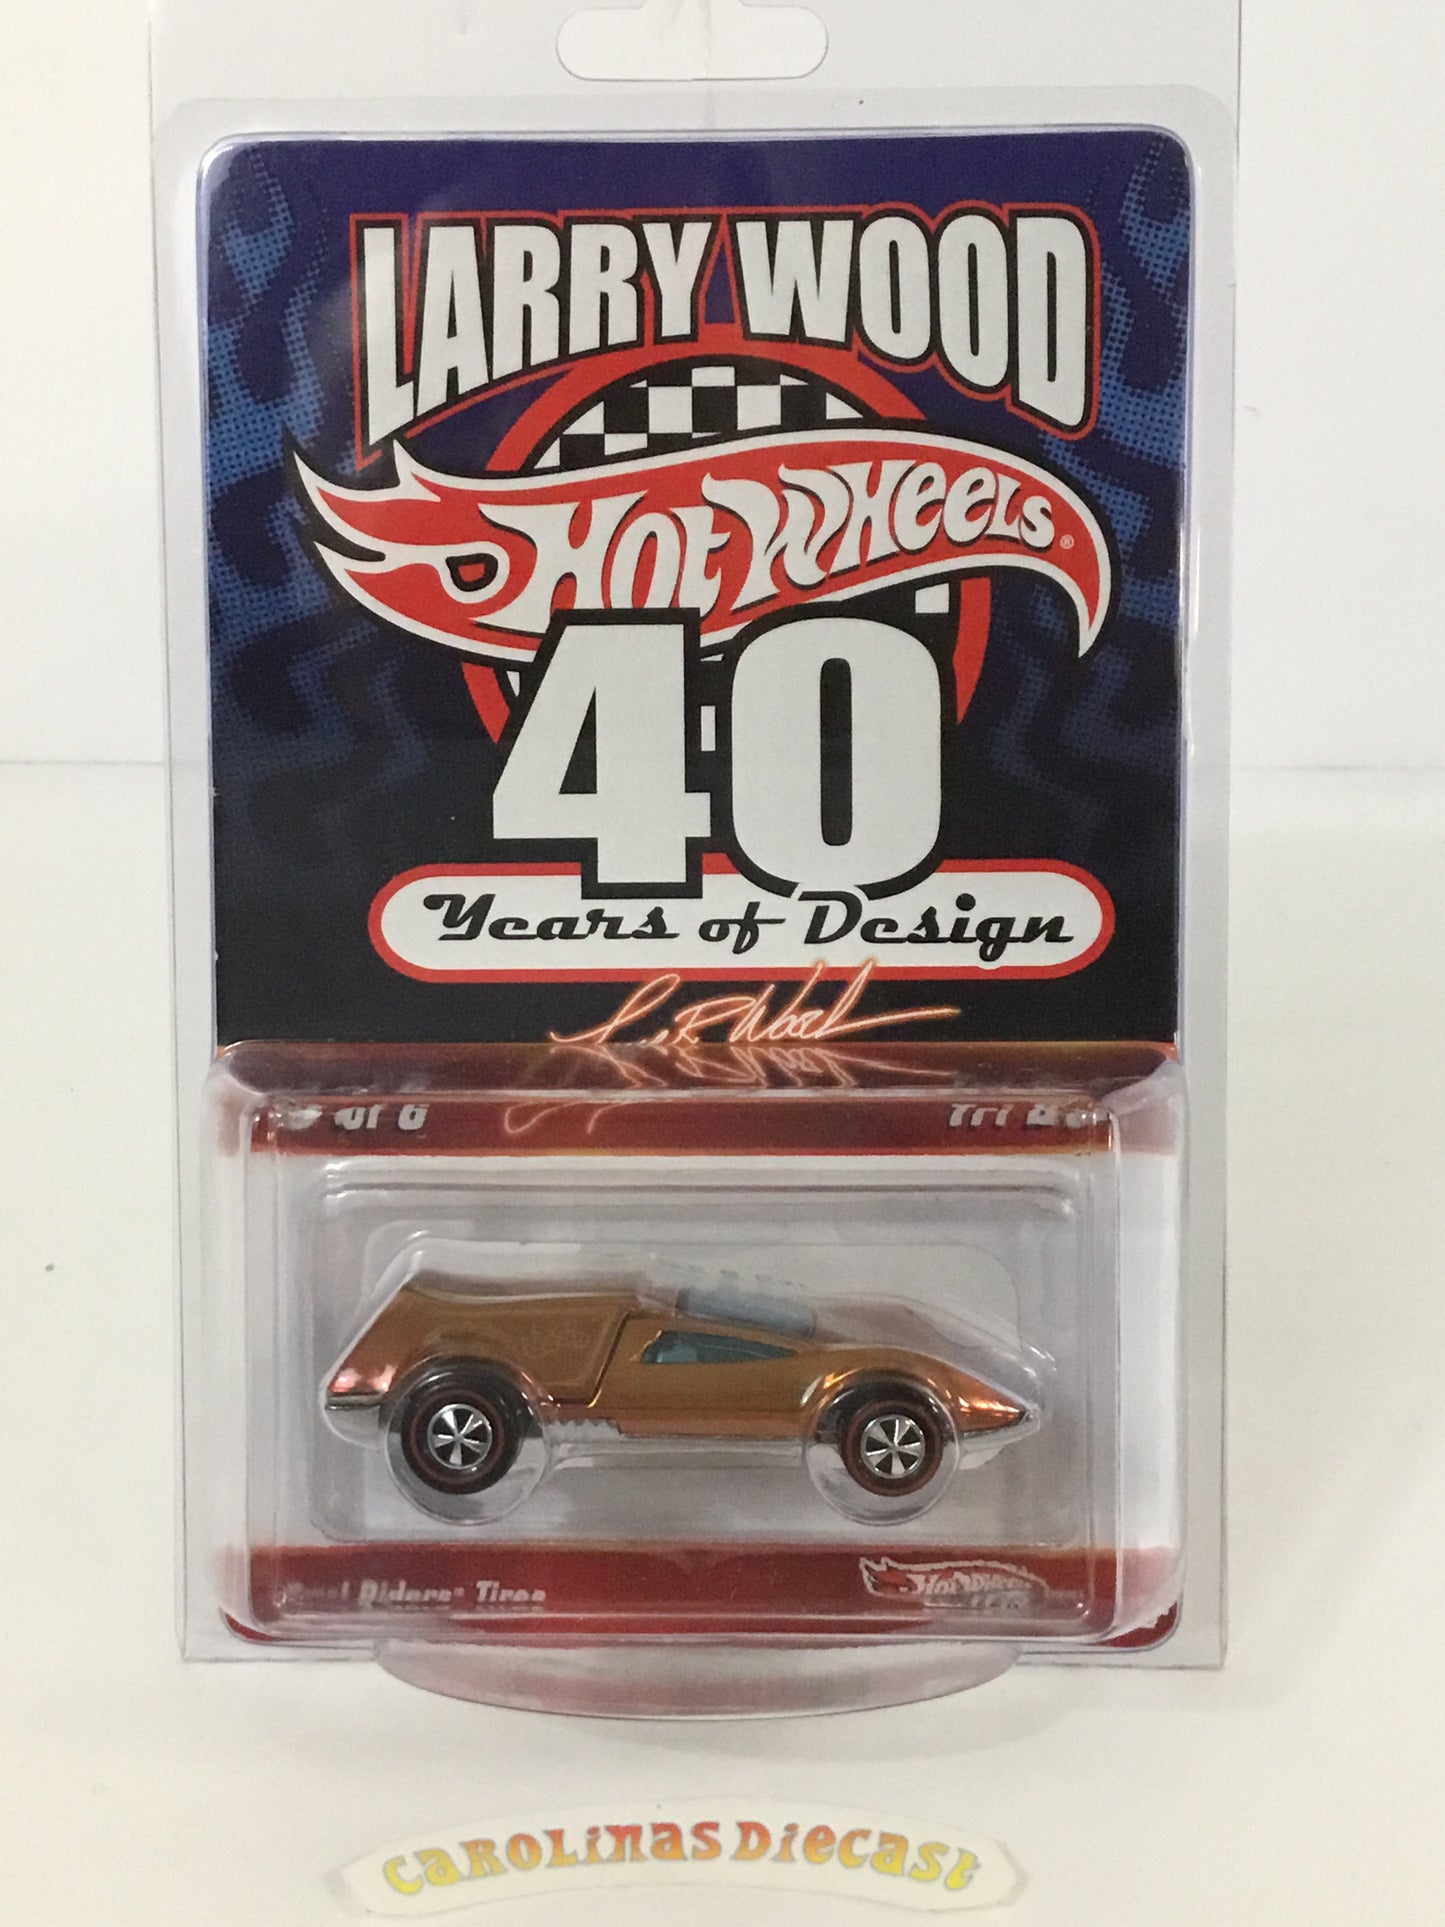 Hot wheels Larry wood 40 yrs of design Tri Baby rlc ?/8500